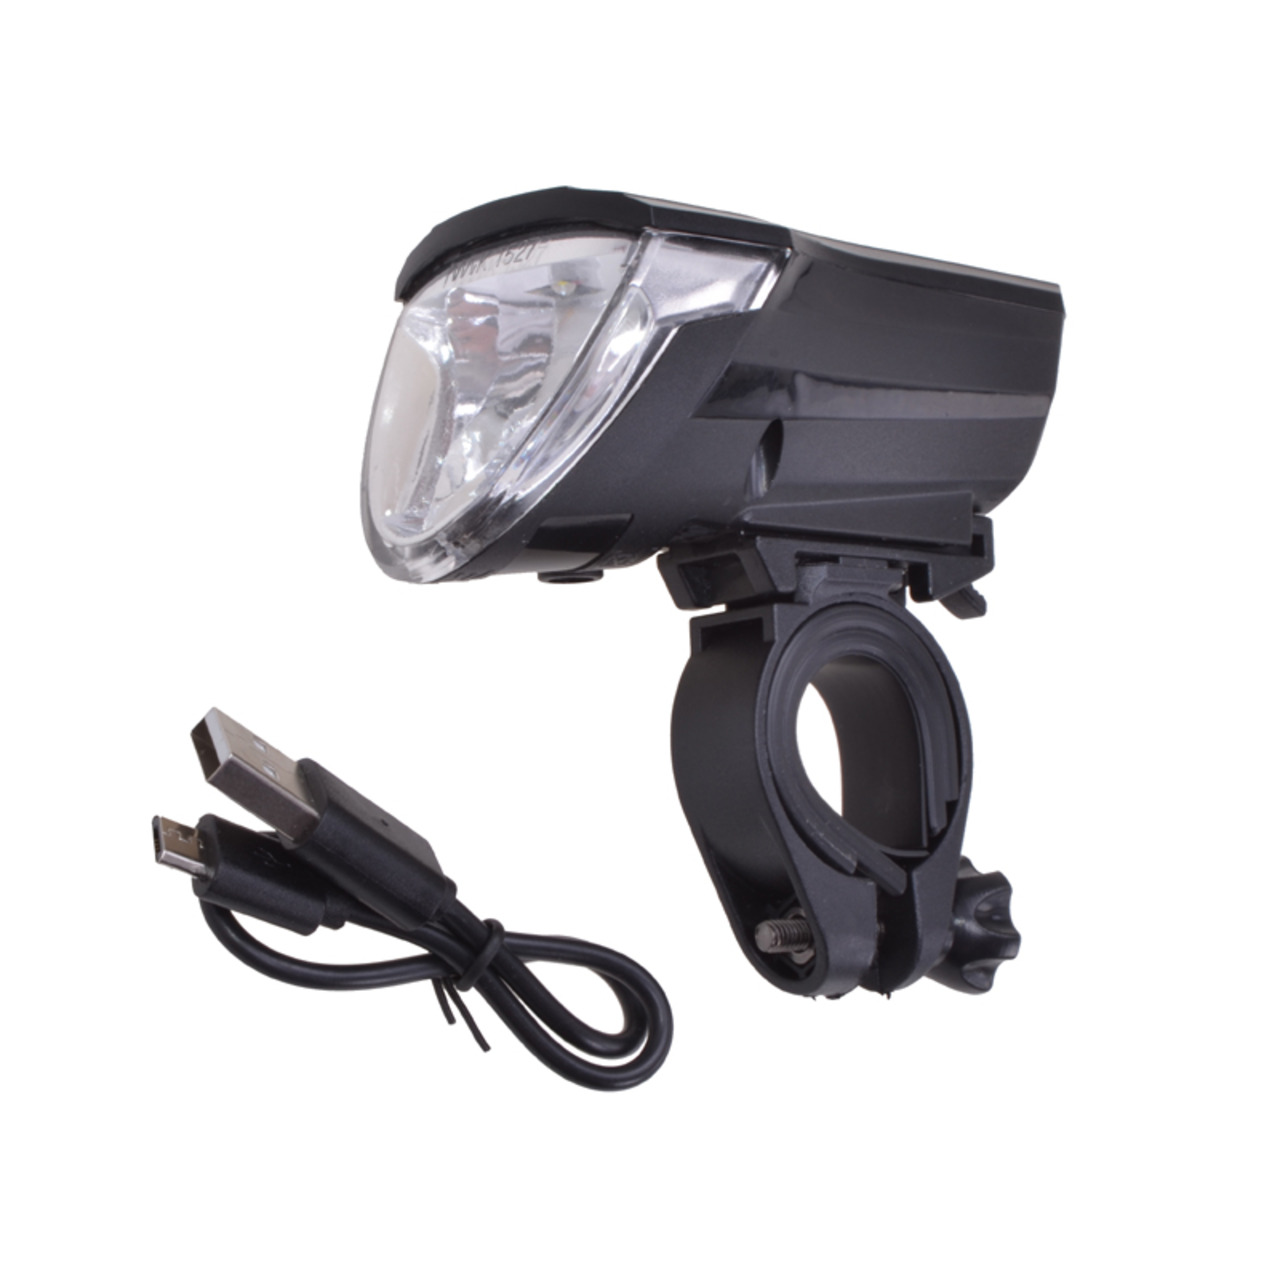 Filmer Fahrrad-LED-Frontlicht 49024- 3 Leuchtstufen- mit Helligkeitssensor- IPX4